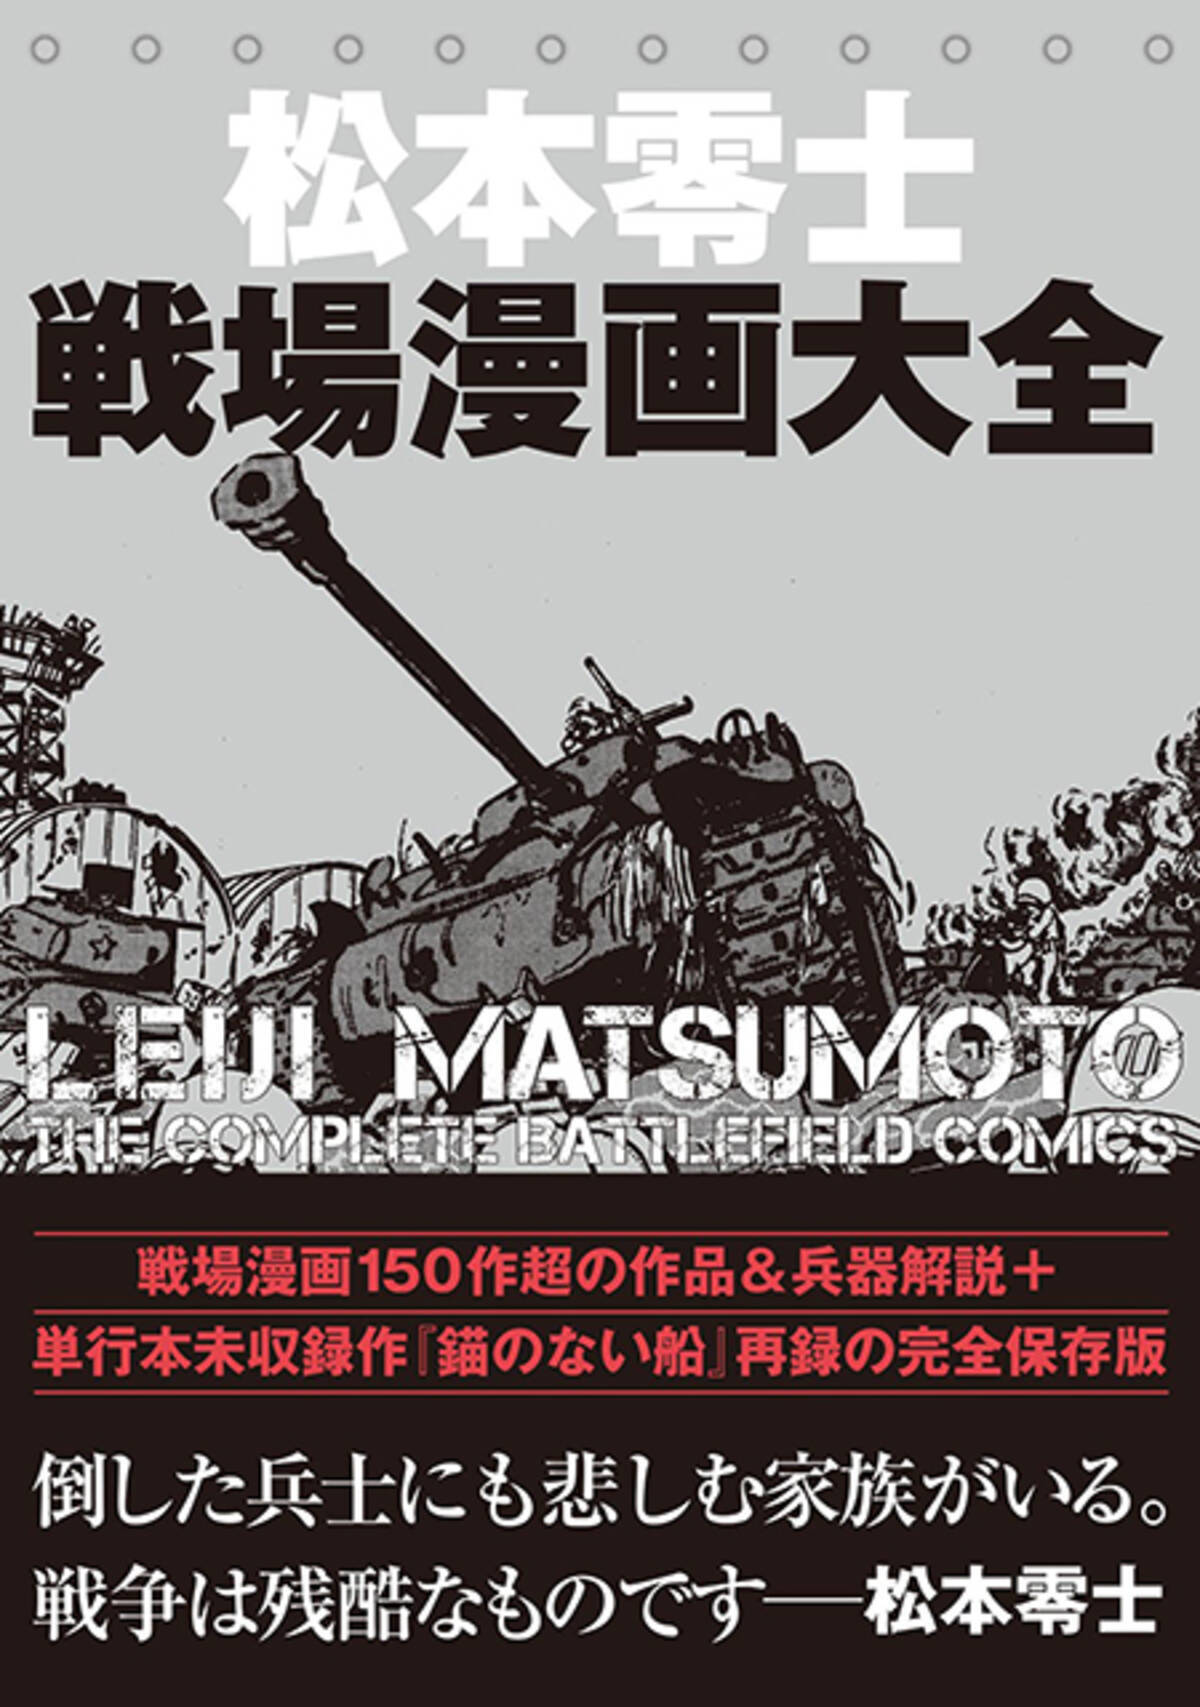 松本零士のライフワークを詰め込んだ一冊 16年12月13日 エキサイトニュース